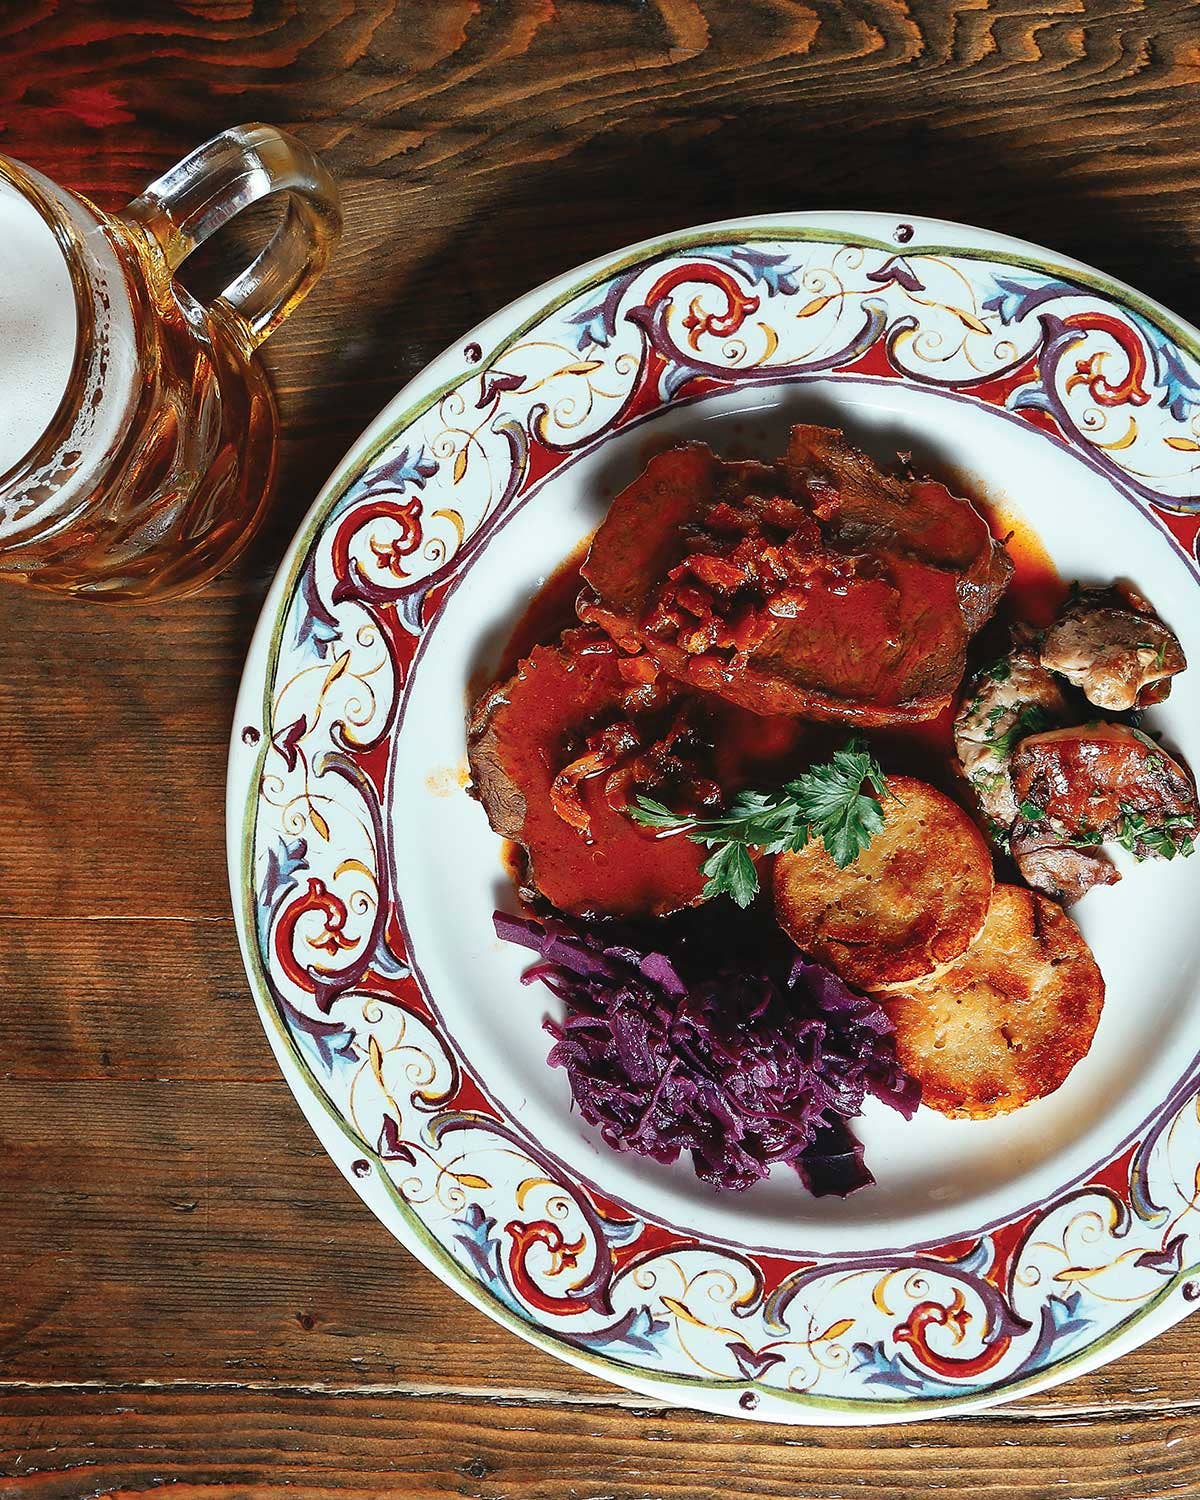 Cider Braised Red Cabbage or Sauerbraten